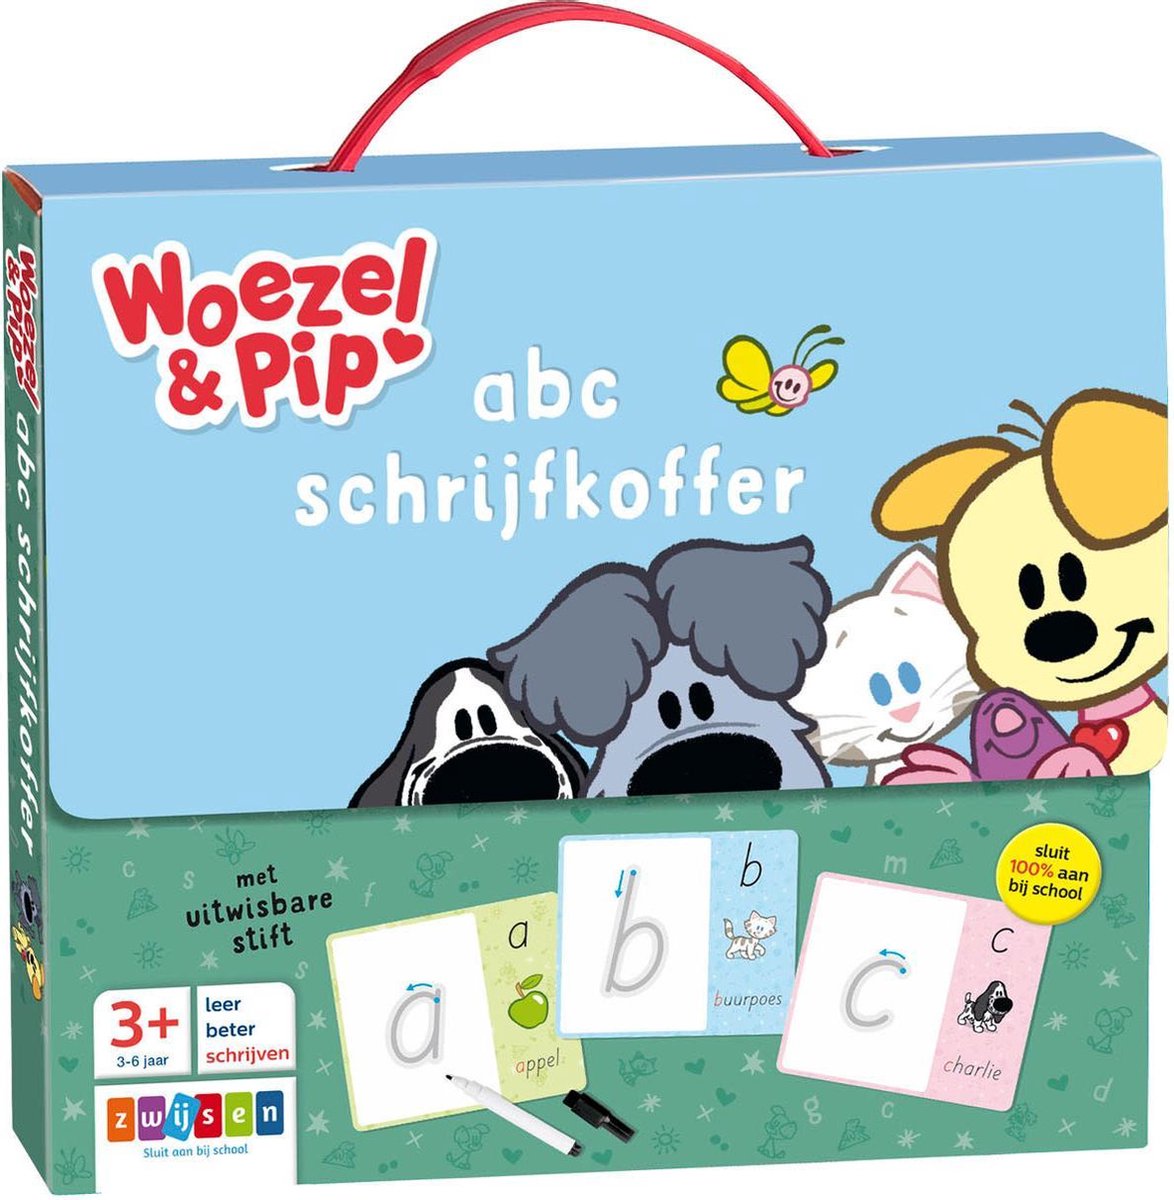 Woezel & Pip - abc schrijfkoffer Games | bol.com